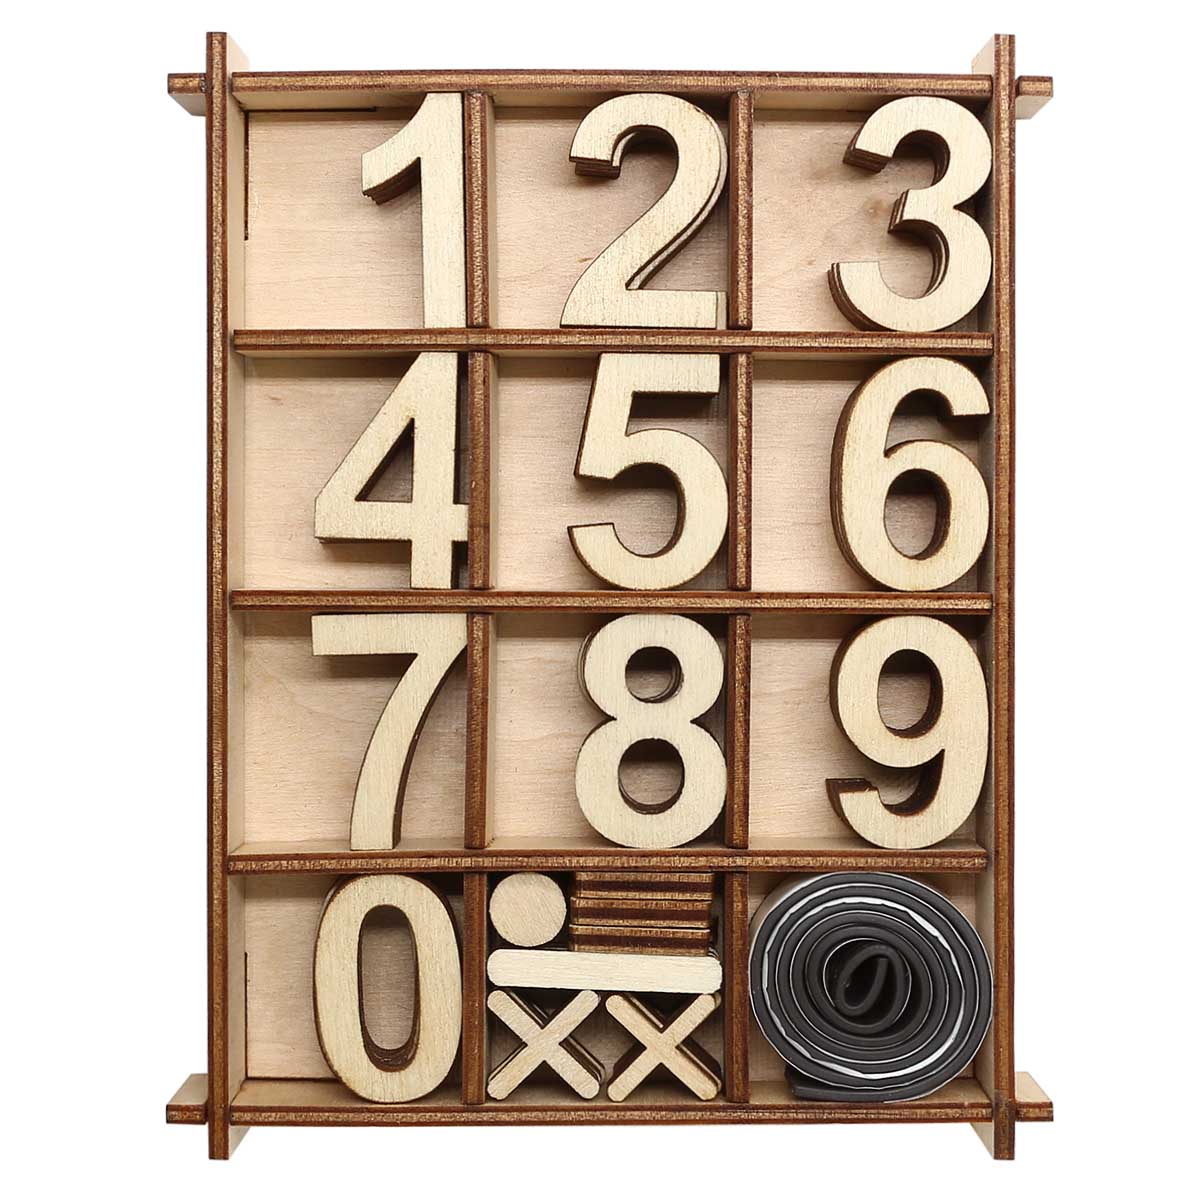 фото L-1175 деревянная заготовка астра набор цифр 48 шт. в коробке, 11,3х14,6 см